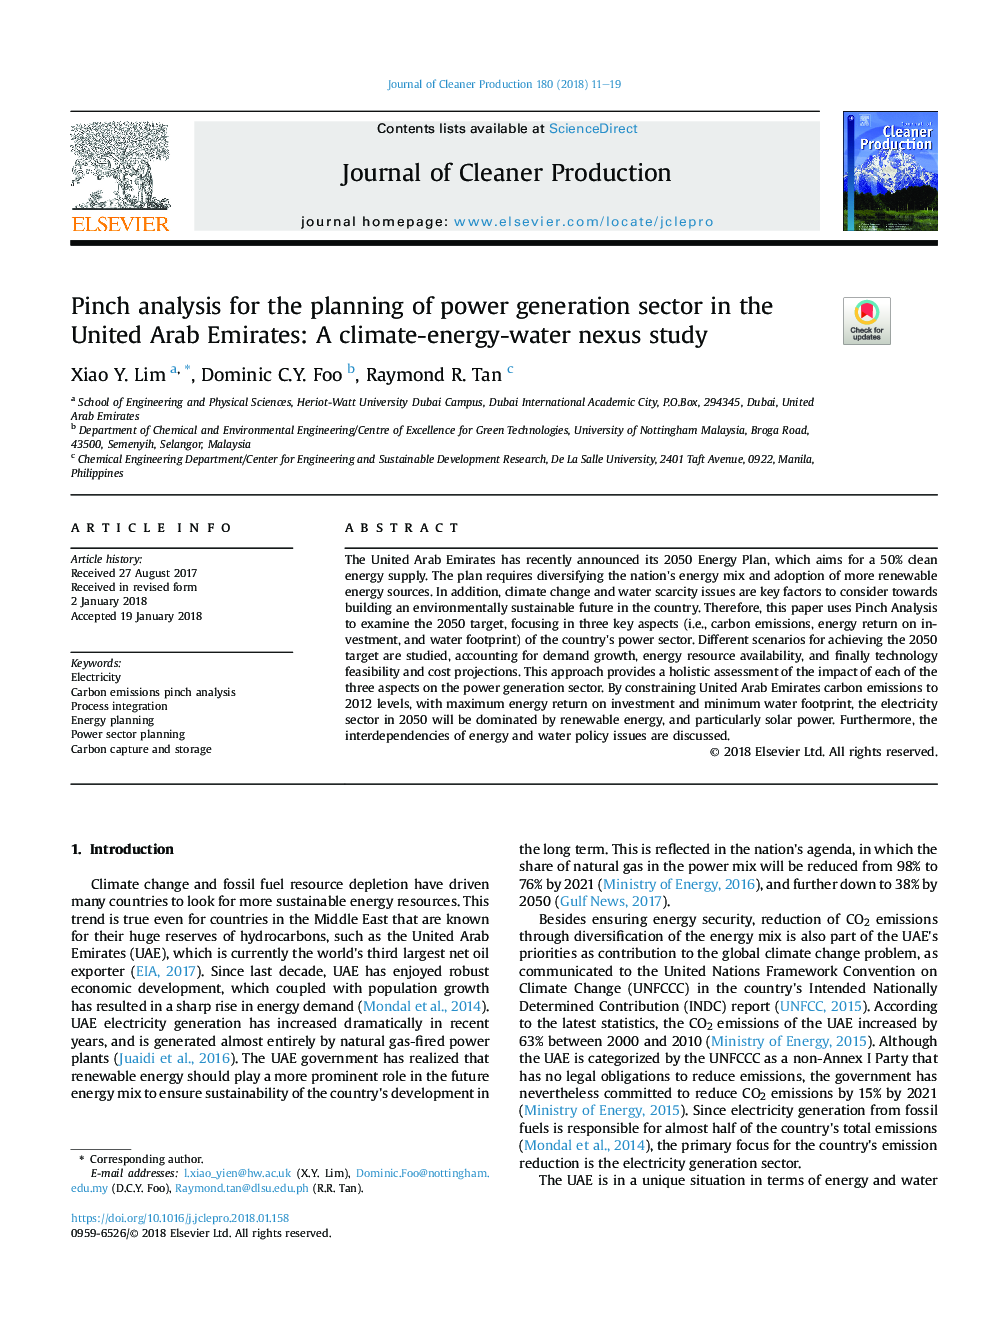 تجزیه و تحلیل خرج کردن برای برنامه ریزی بخش تولید برق در امارات متحده عربی: بررسی رابطه آب و هوا-انرژی-آب ناسا 